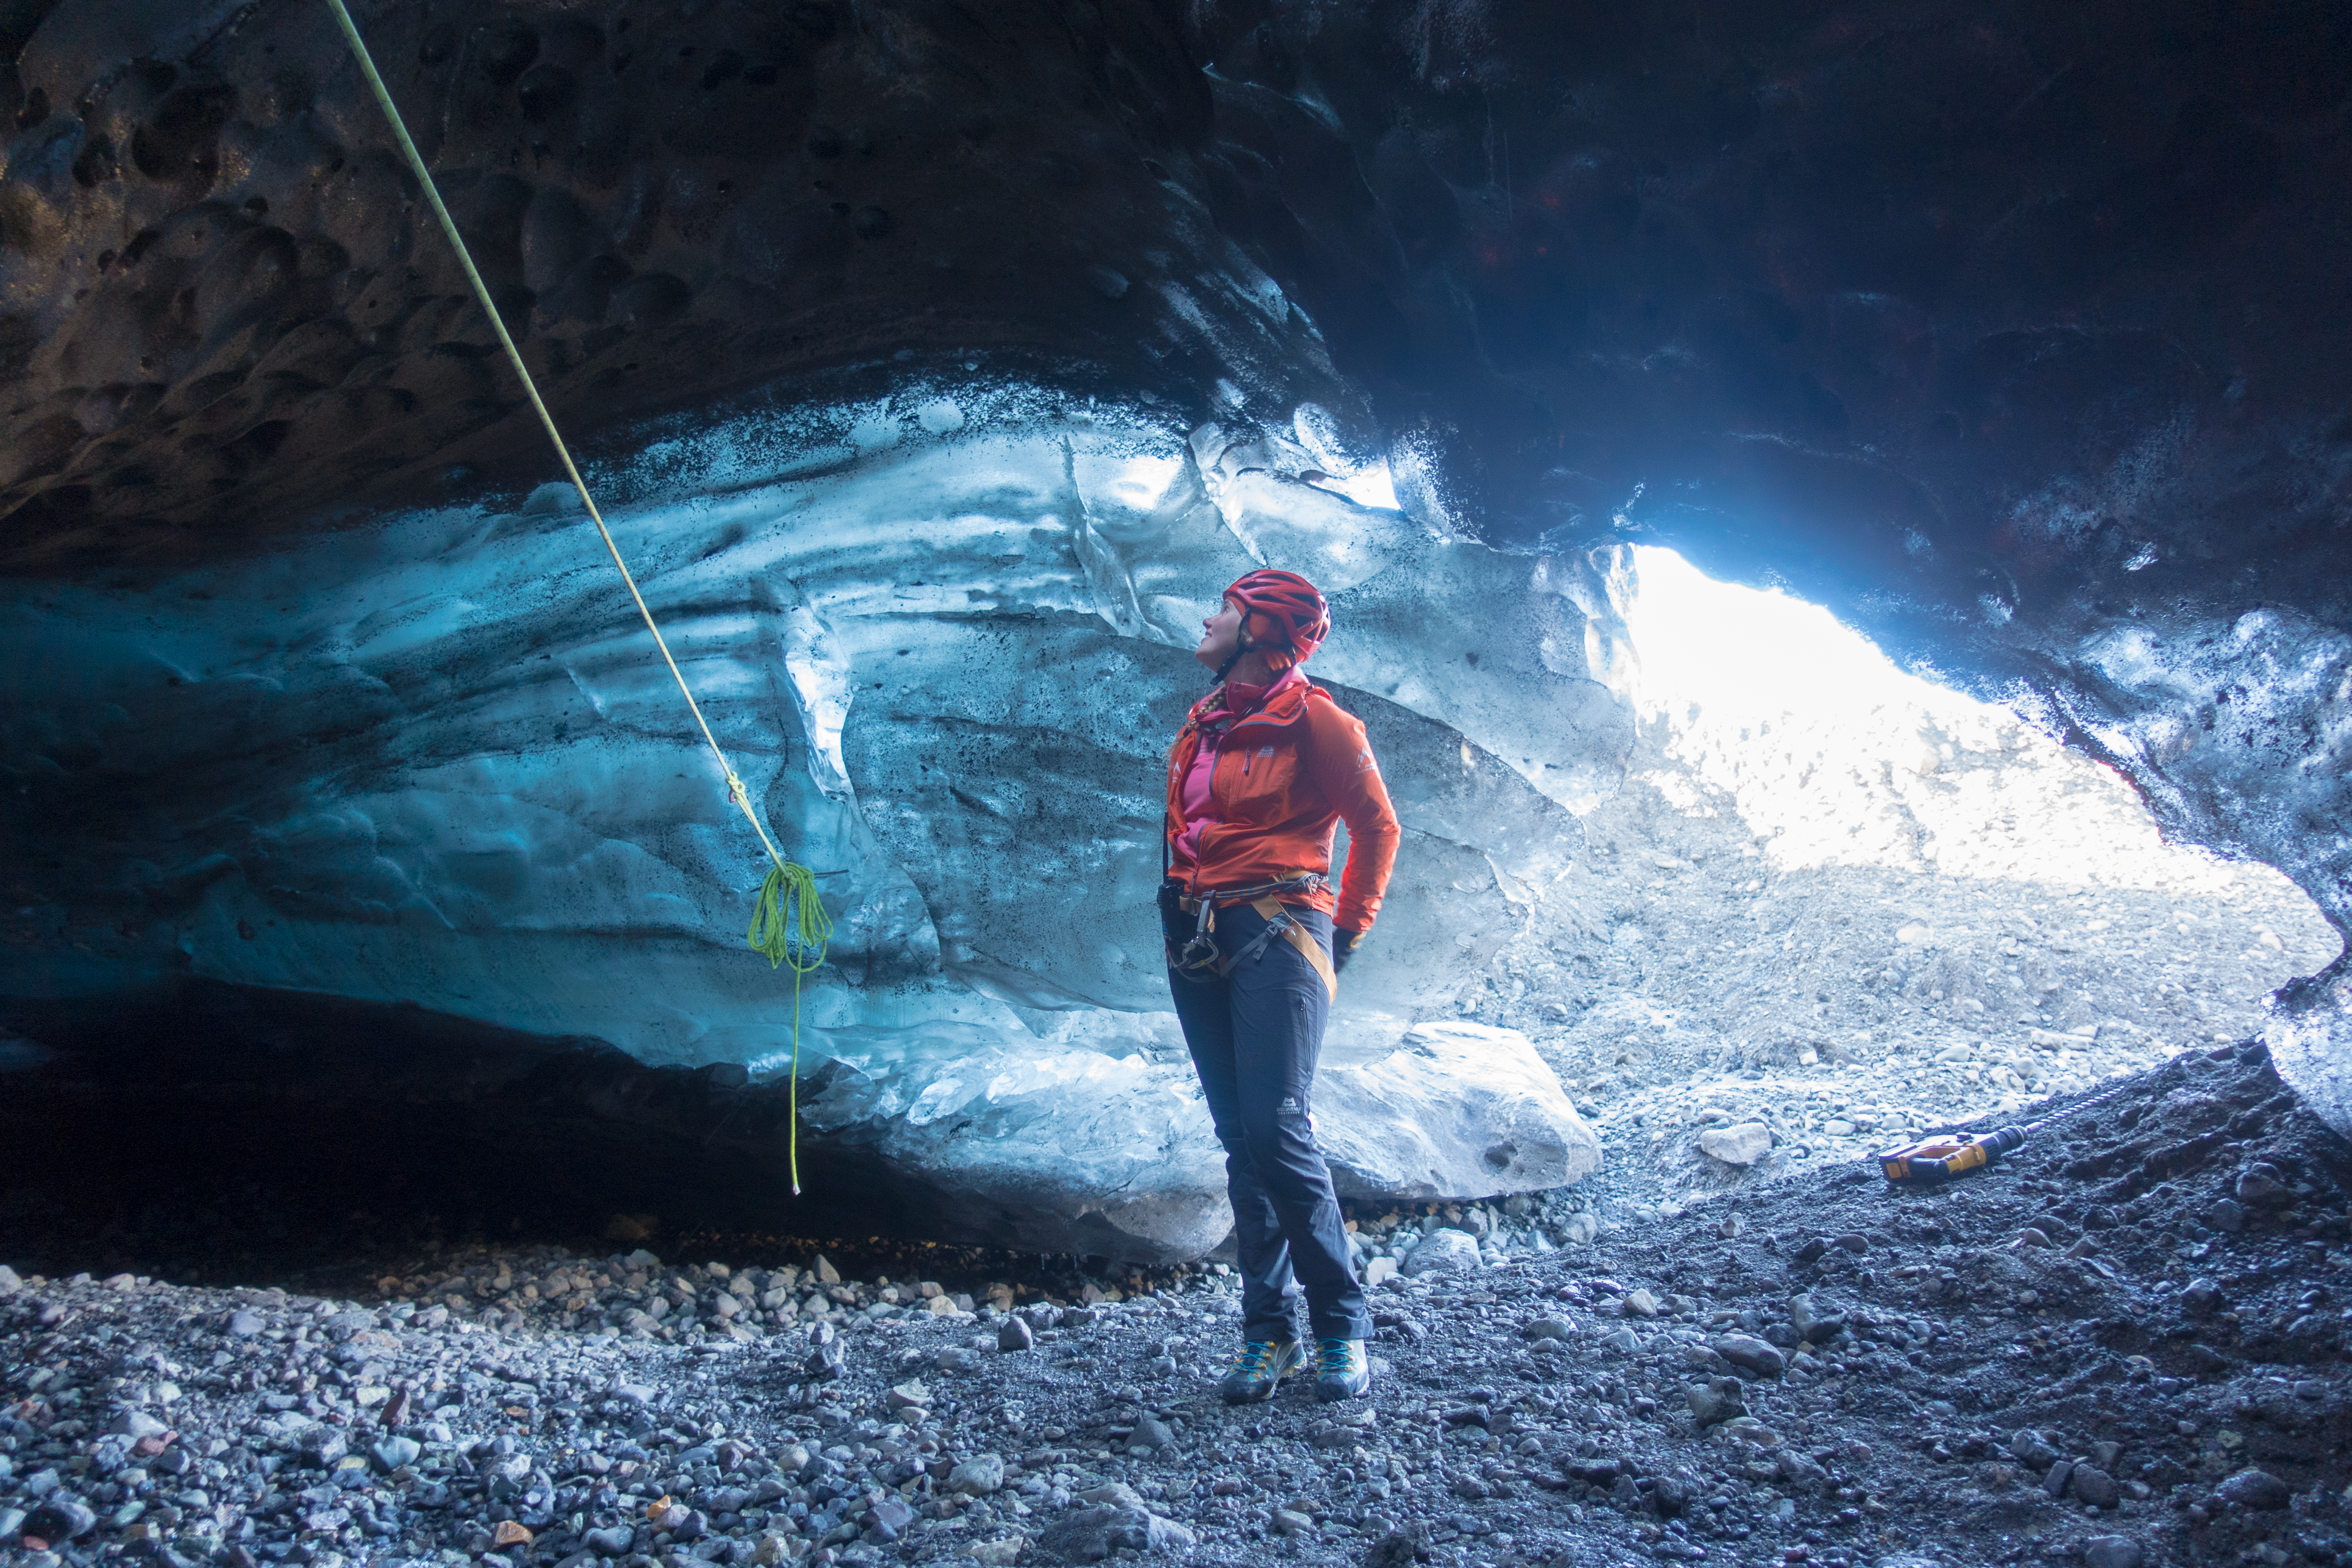 斯卡夫塔山自然保护区也发现了晶莹的蓝冰洞